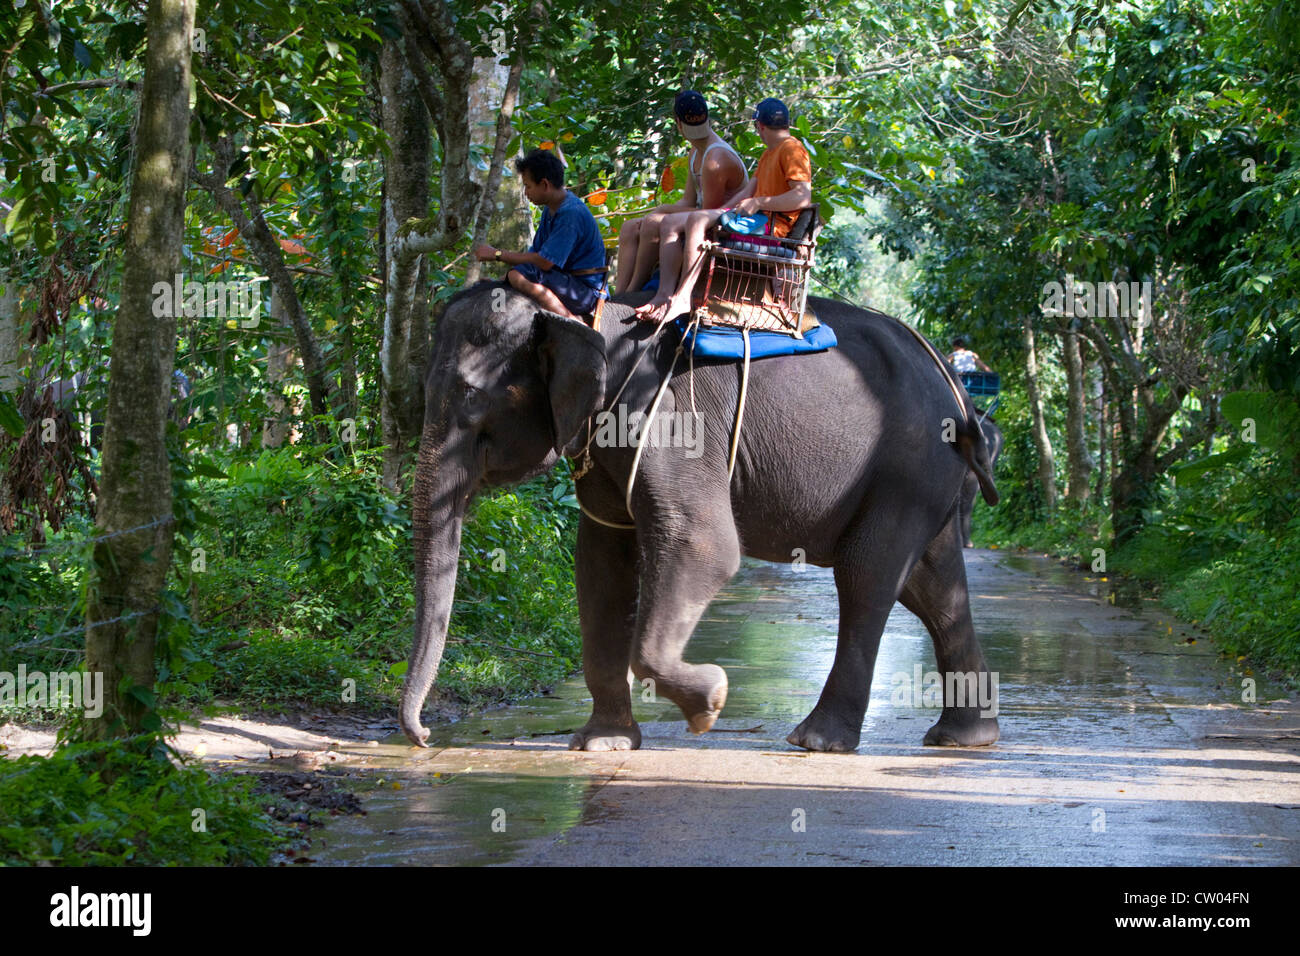 Les touristes ride sur les éléphants d'Asie sur l'île de Ko Samui, Thaïlande. Banque D'Images